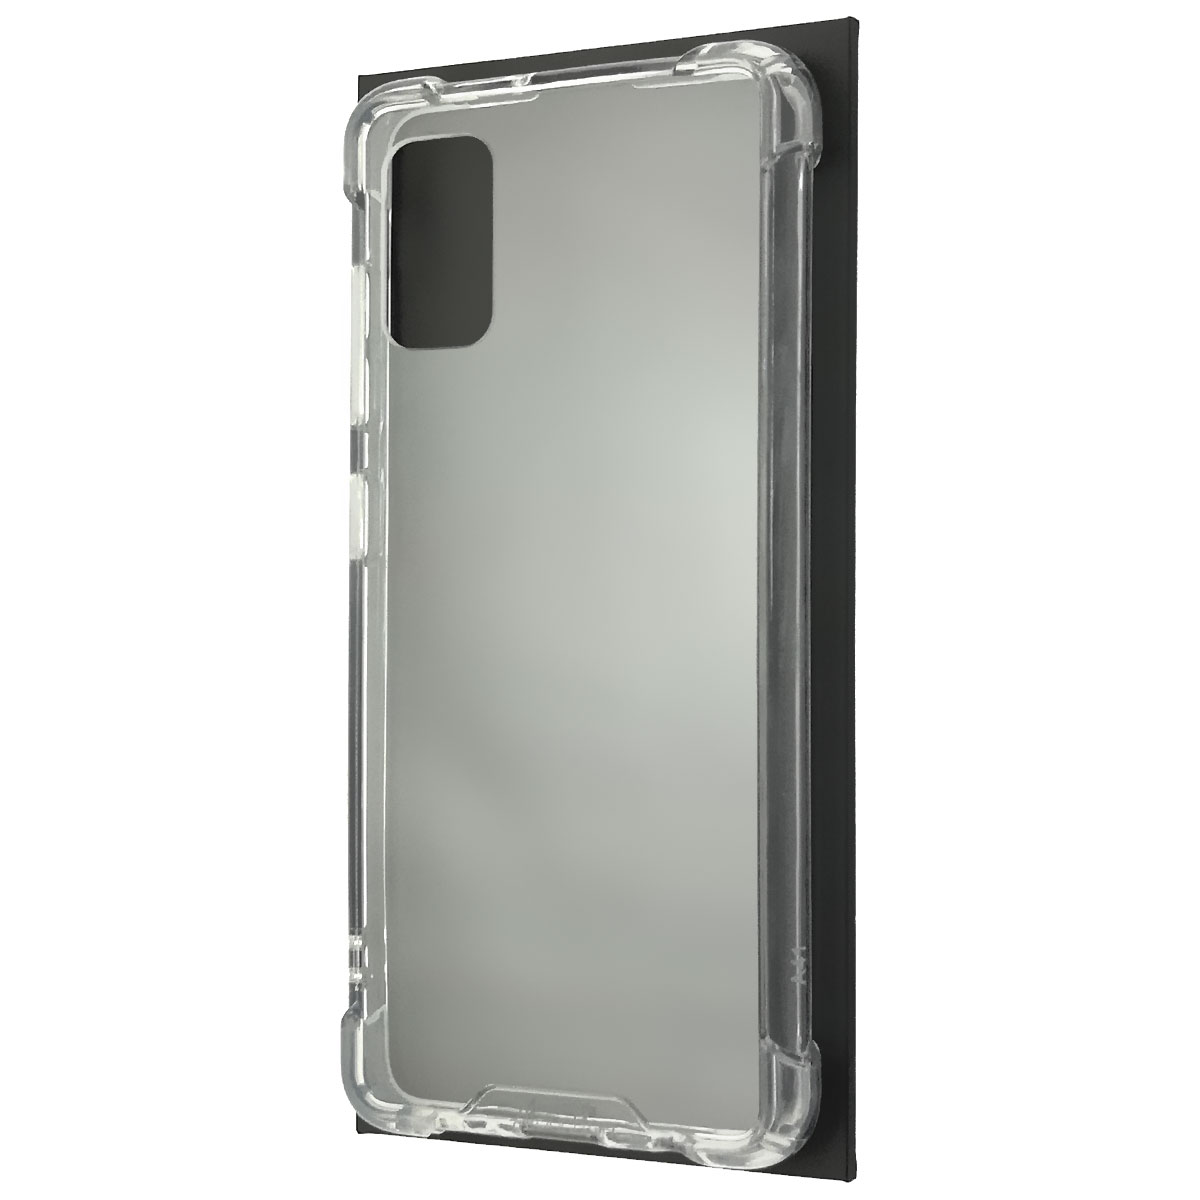 Чехол накладка King Kong Case для SAMSUNG Galaxy A41 (SM-A415), противоударный, силикон, цвет прозрачный